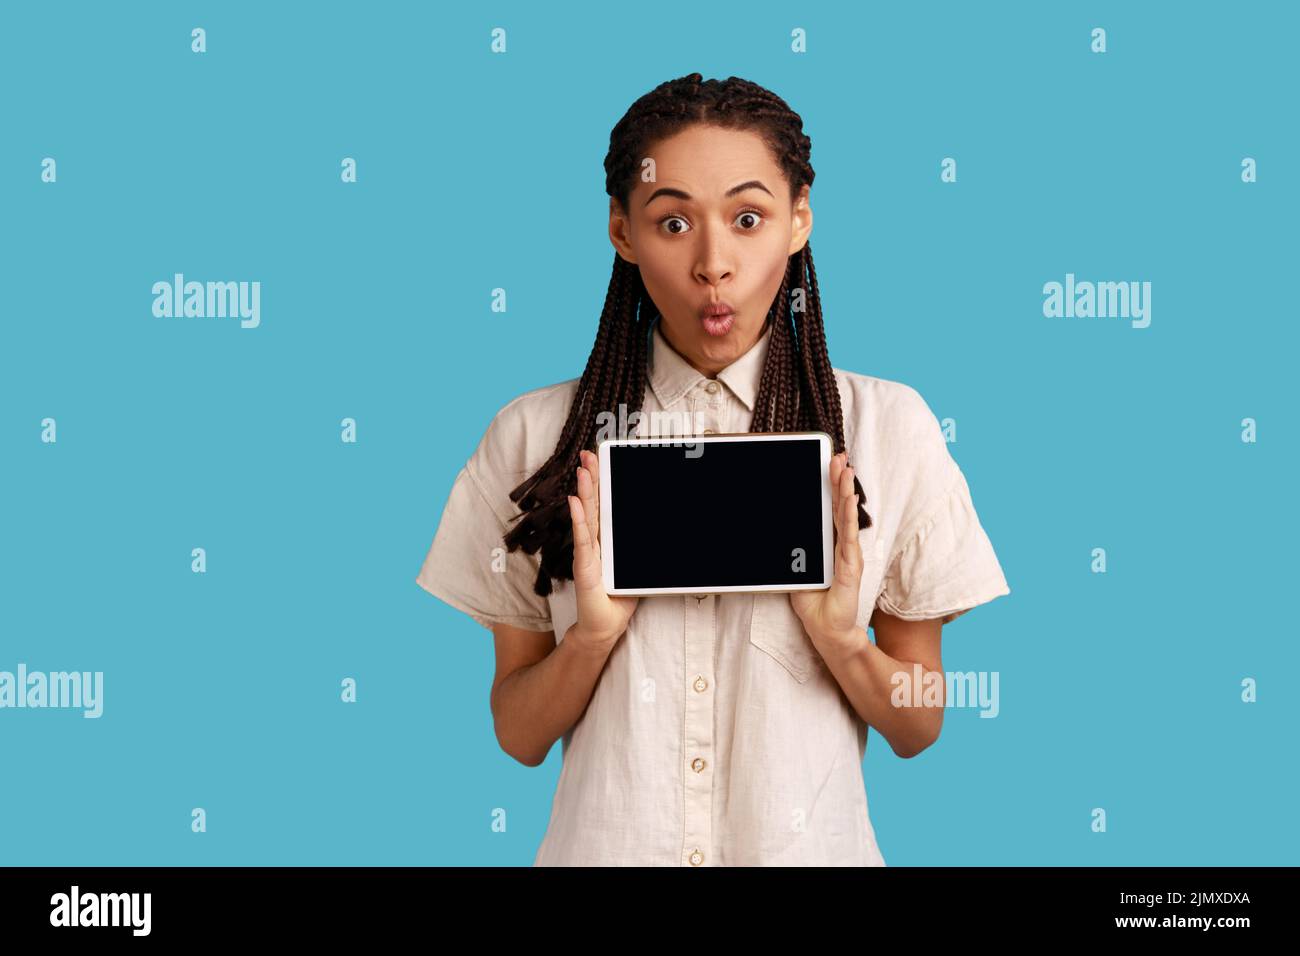 Asombrado sorprendido mujer sostiene tableta moderna con pantalla vacía para su texto promocional, posa con dispositivo electrónico en las manos, usando camisa blanca. Estudio de interior aislado sobre fondo azul. Foto de stock